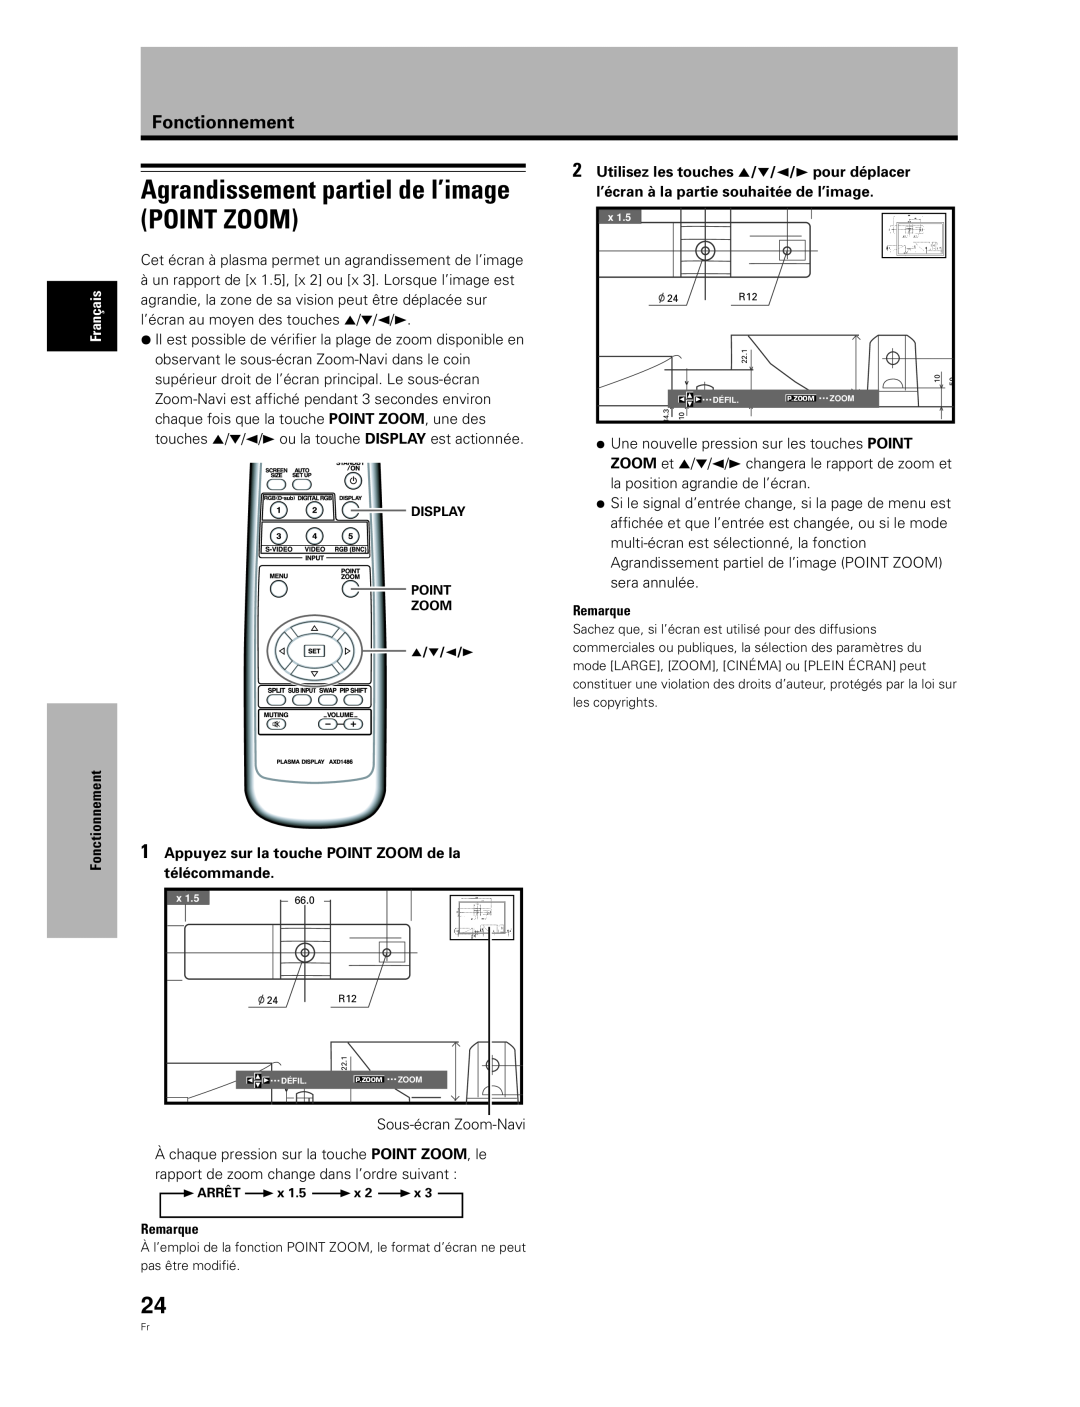 Pioneer PDA-5004 Agrandissement partiel de l’image POINT ZOOM, Utilisez les touches 5/∞/2/3 pour déplacer, Fonctionnement 